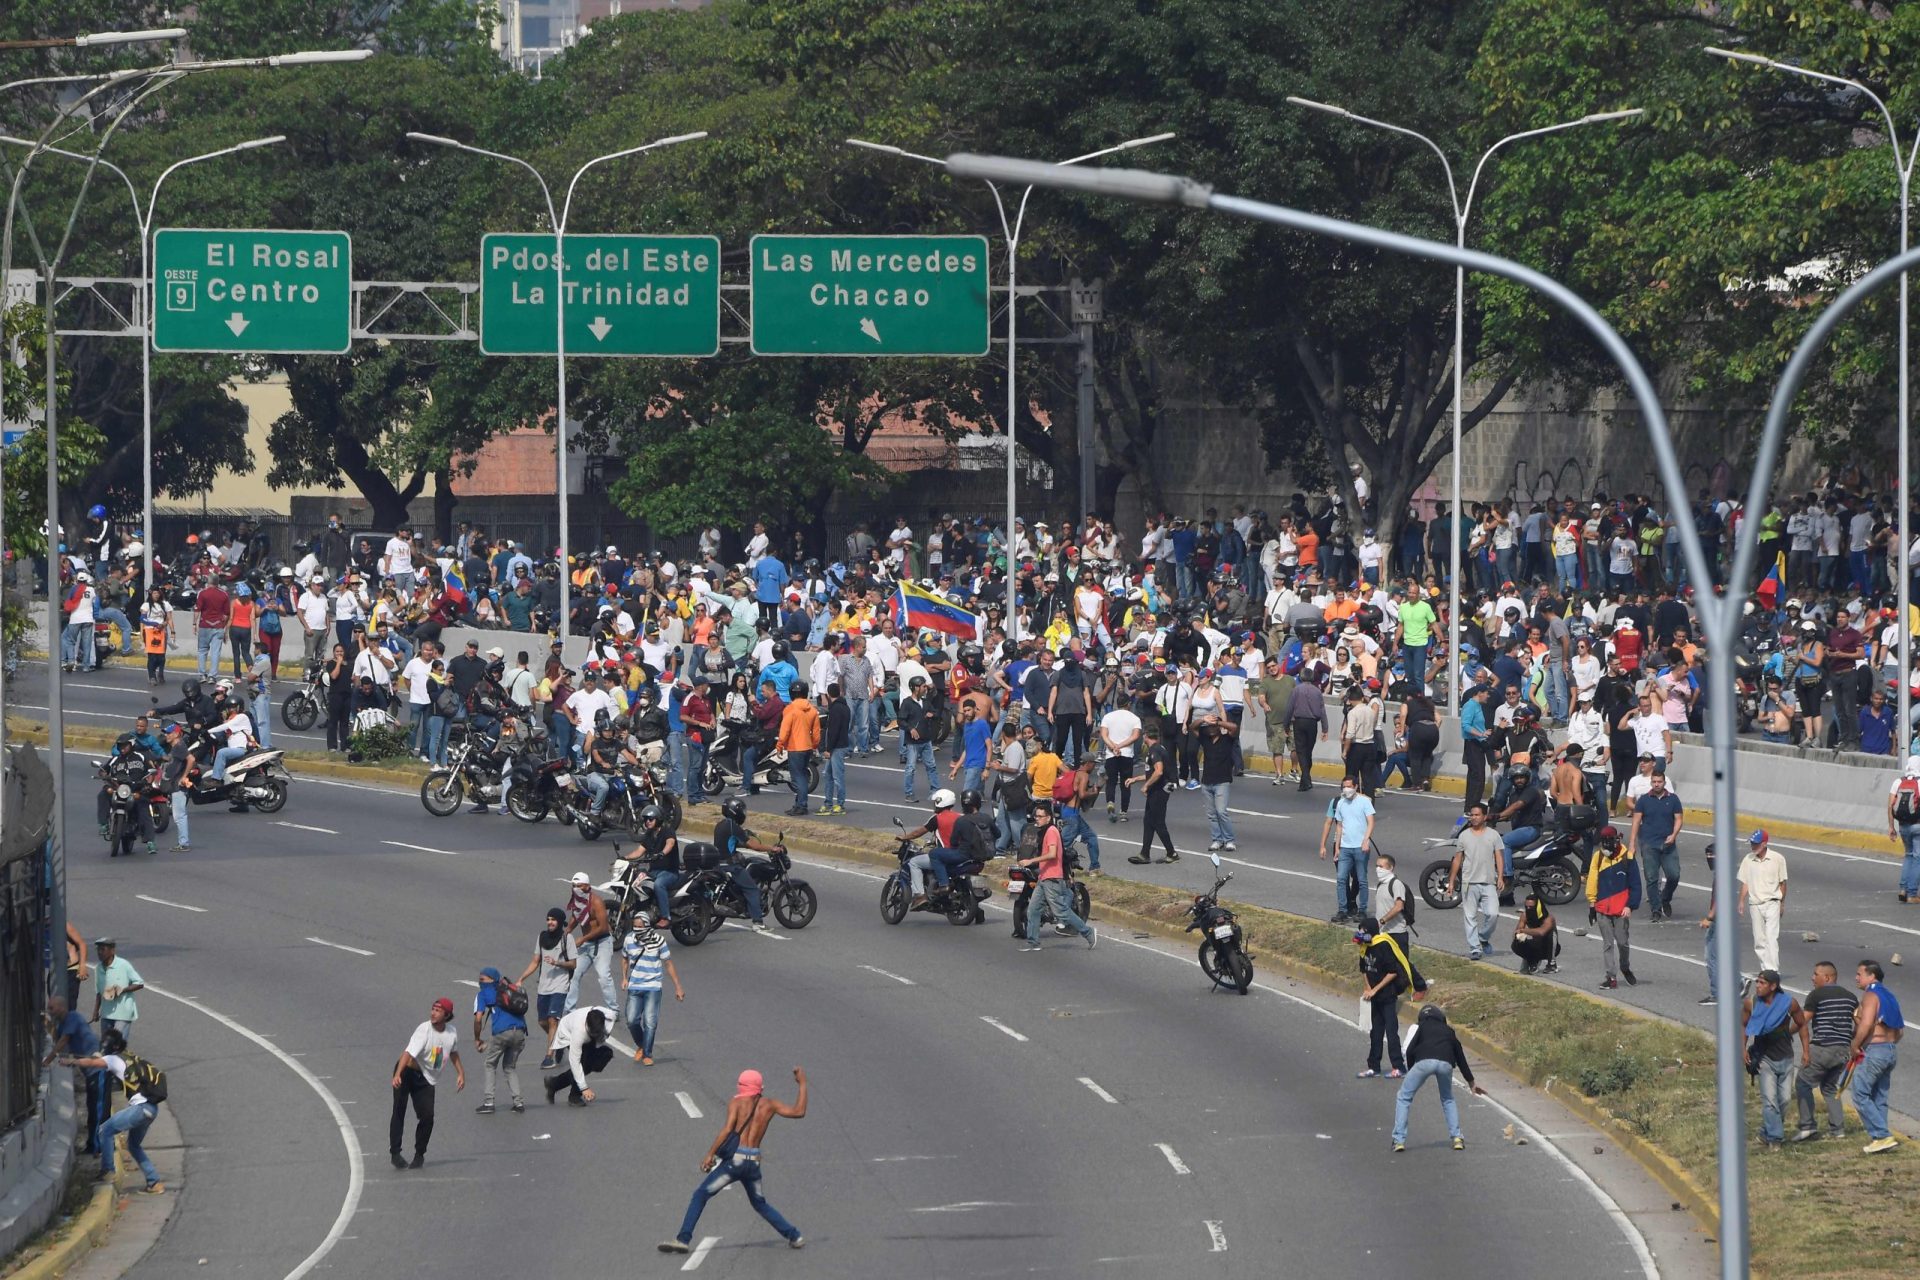 Veículo militar das forças de Maduro atropela grupo de civis em Caracas | VÍDEO